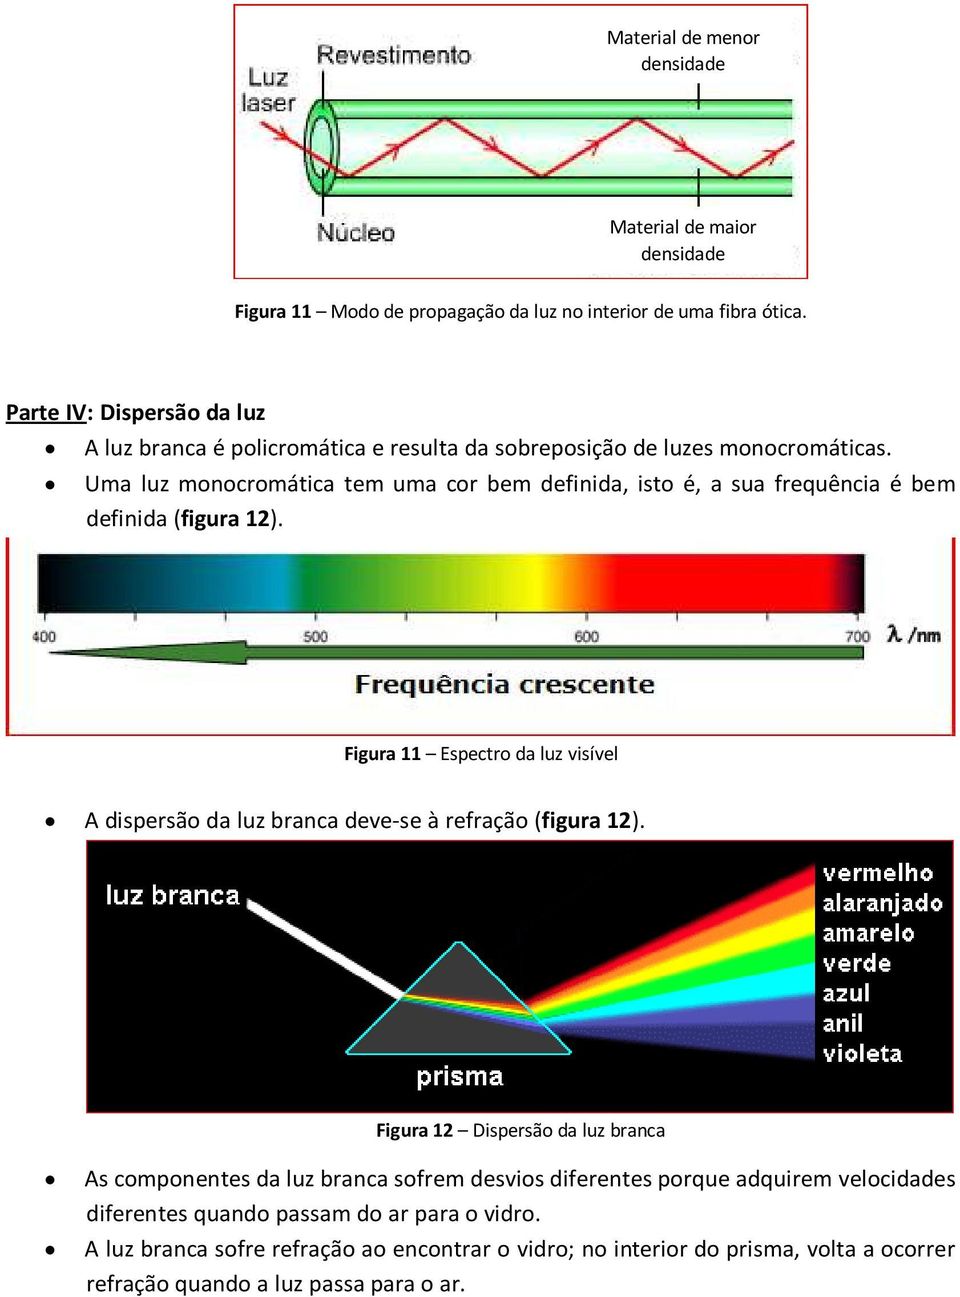 Uma luz monocromática tem uma cor bem definida, isto é, a sua frequência é bem definida (figura 12).